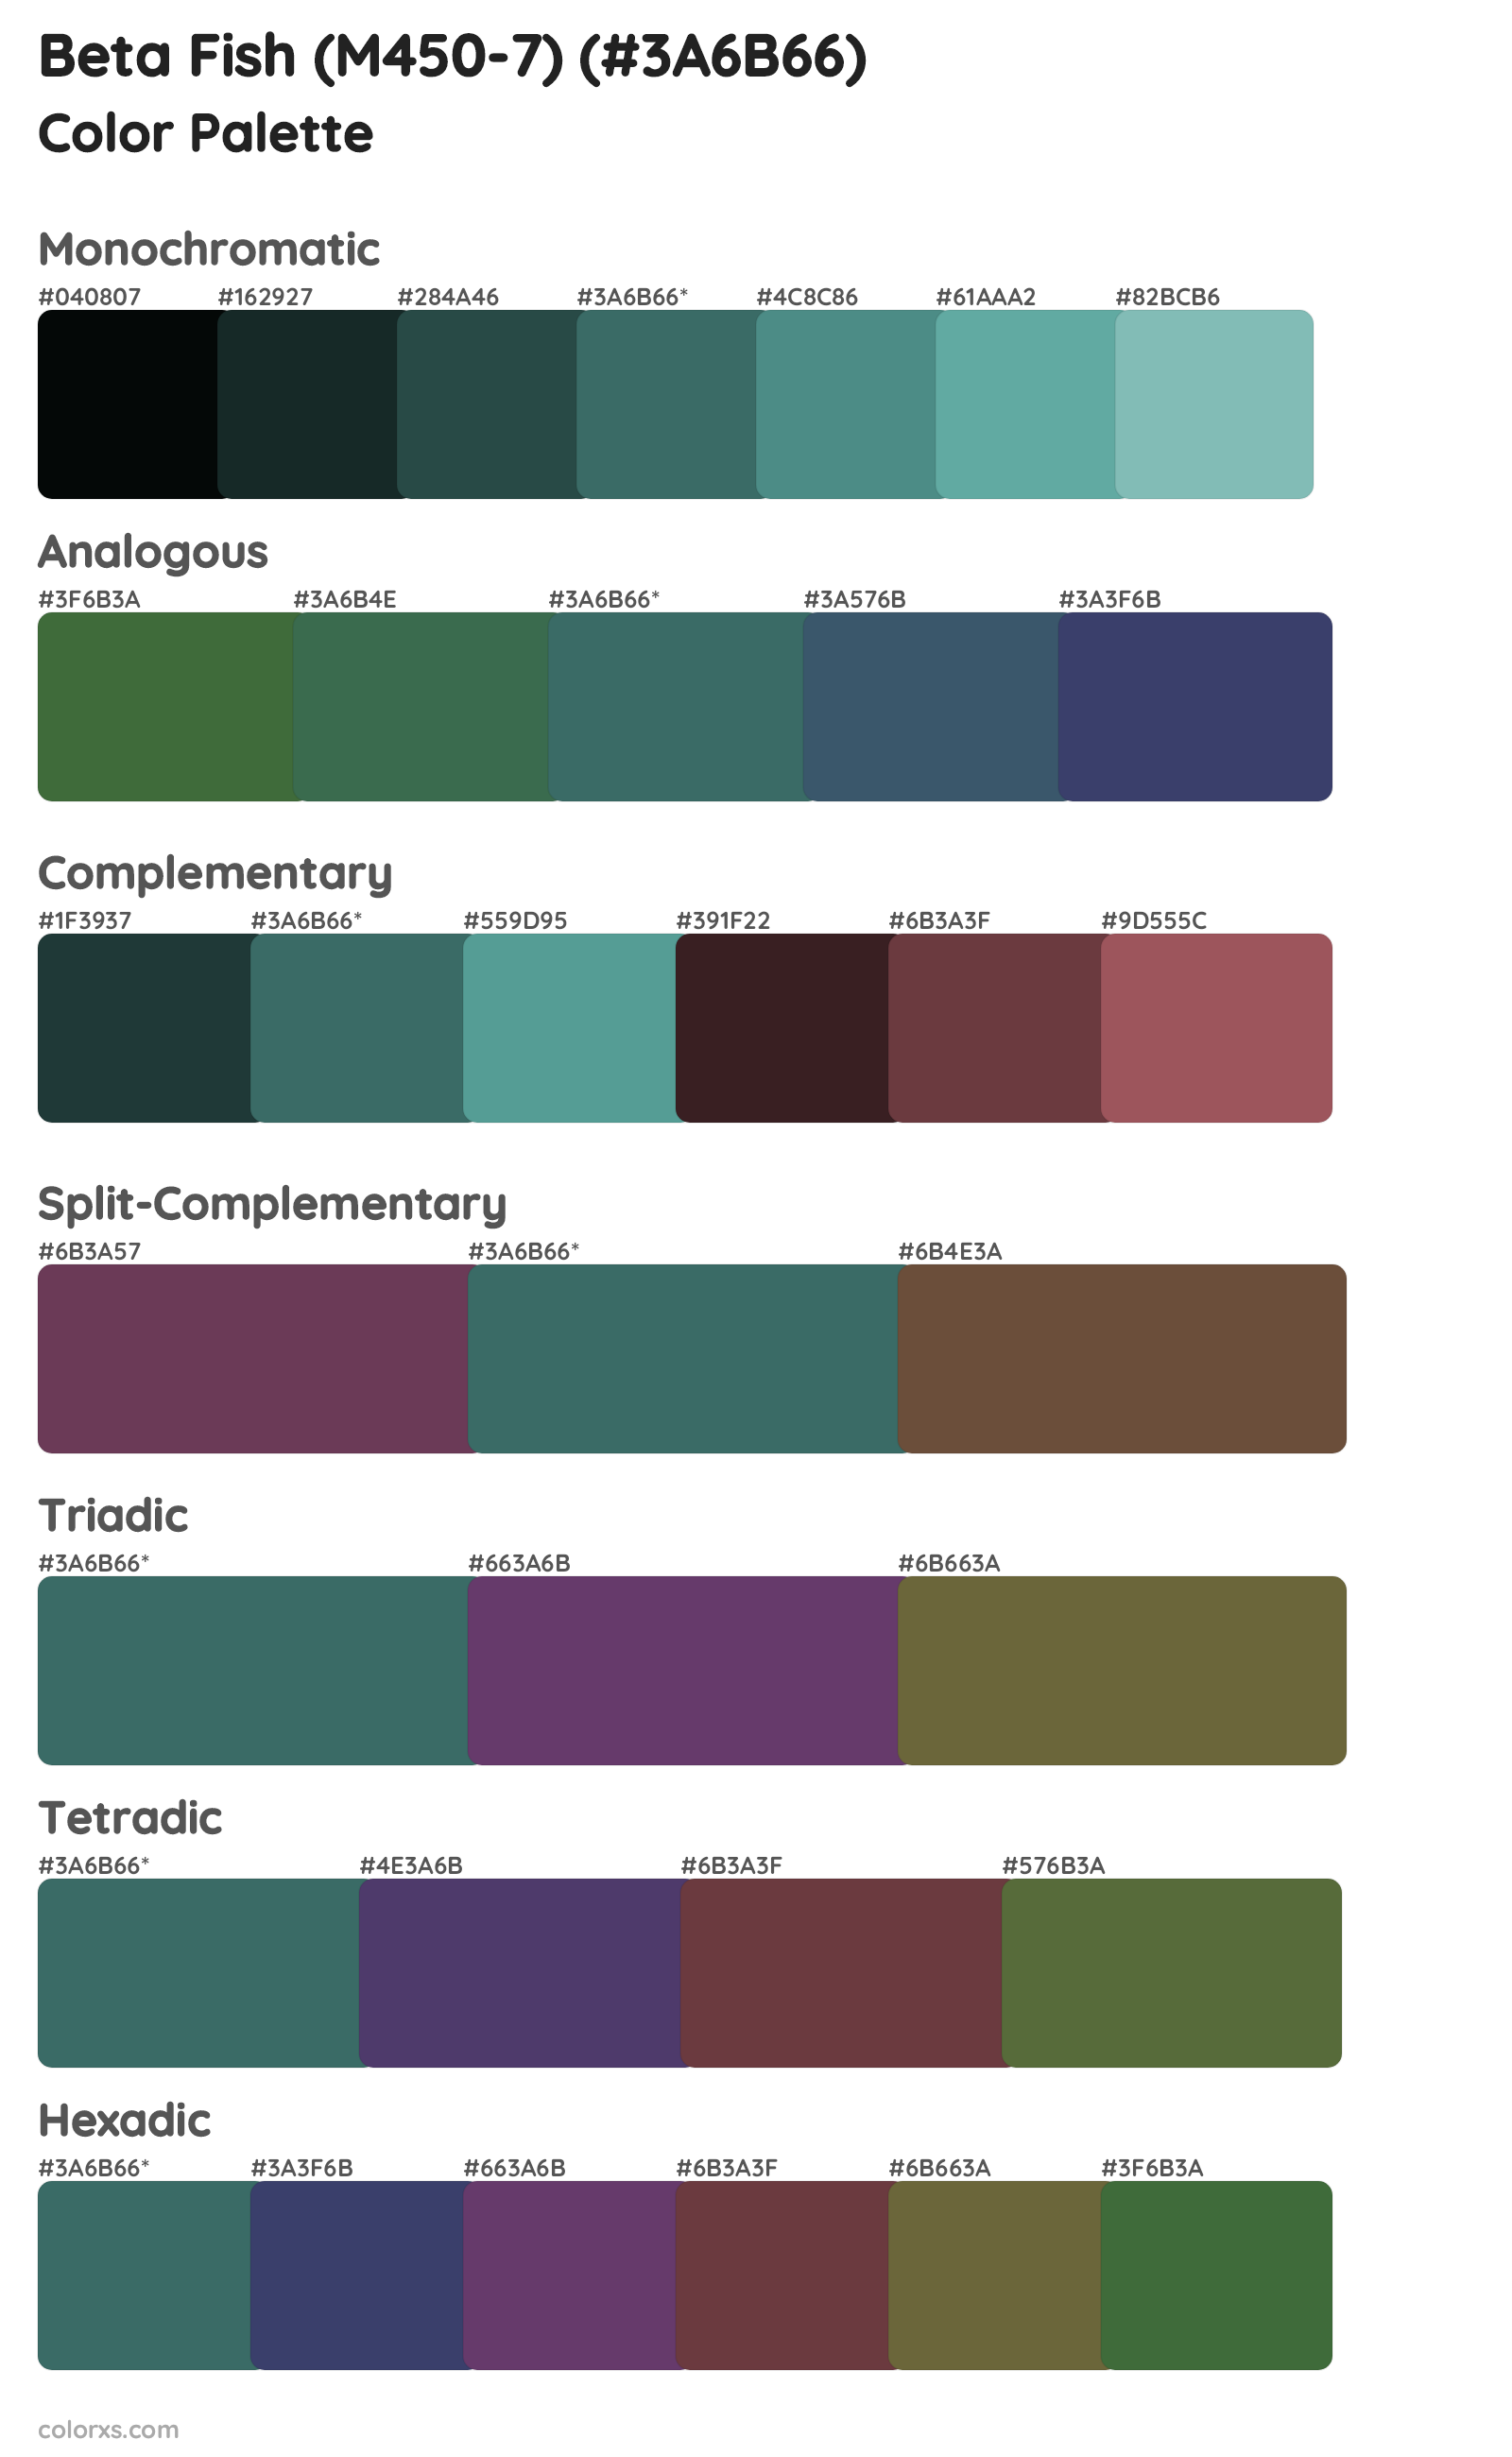 Beta Fish (M450-7) Color Scheme Palettes